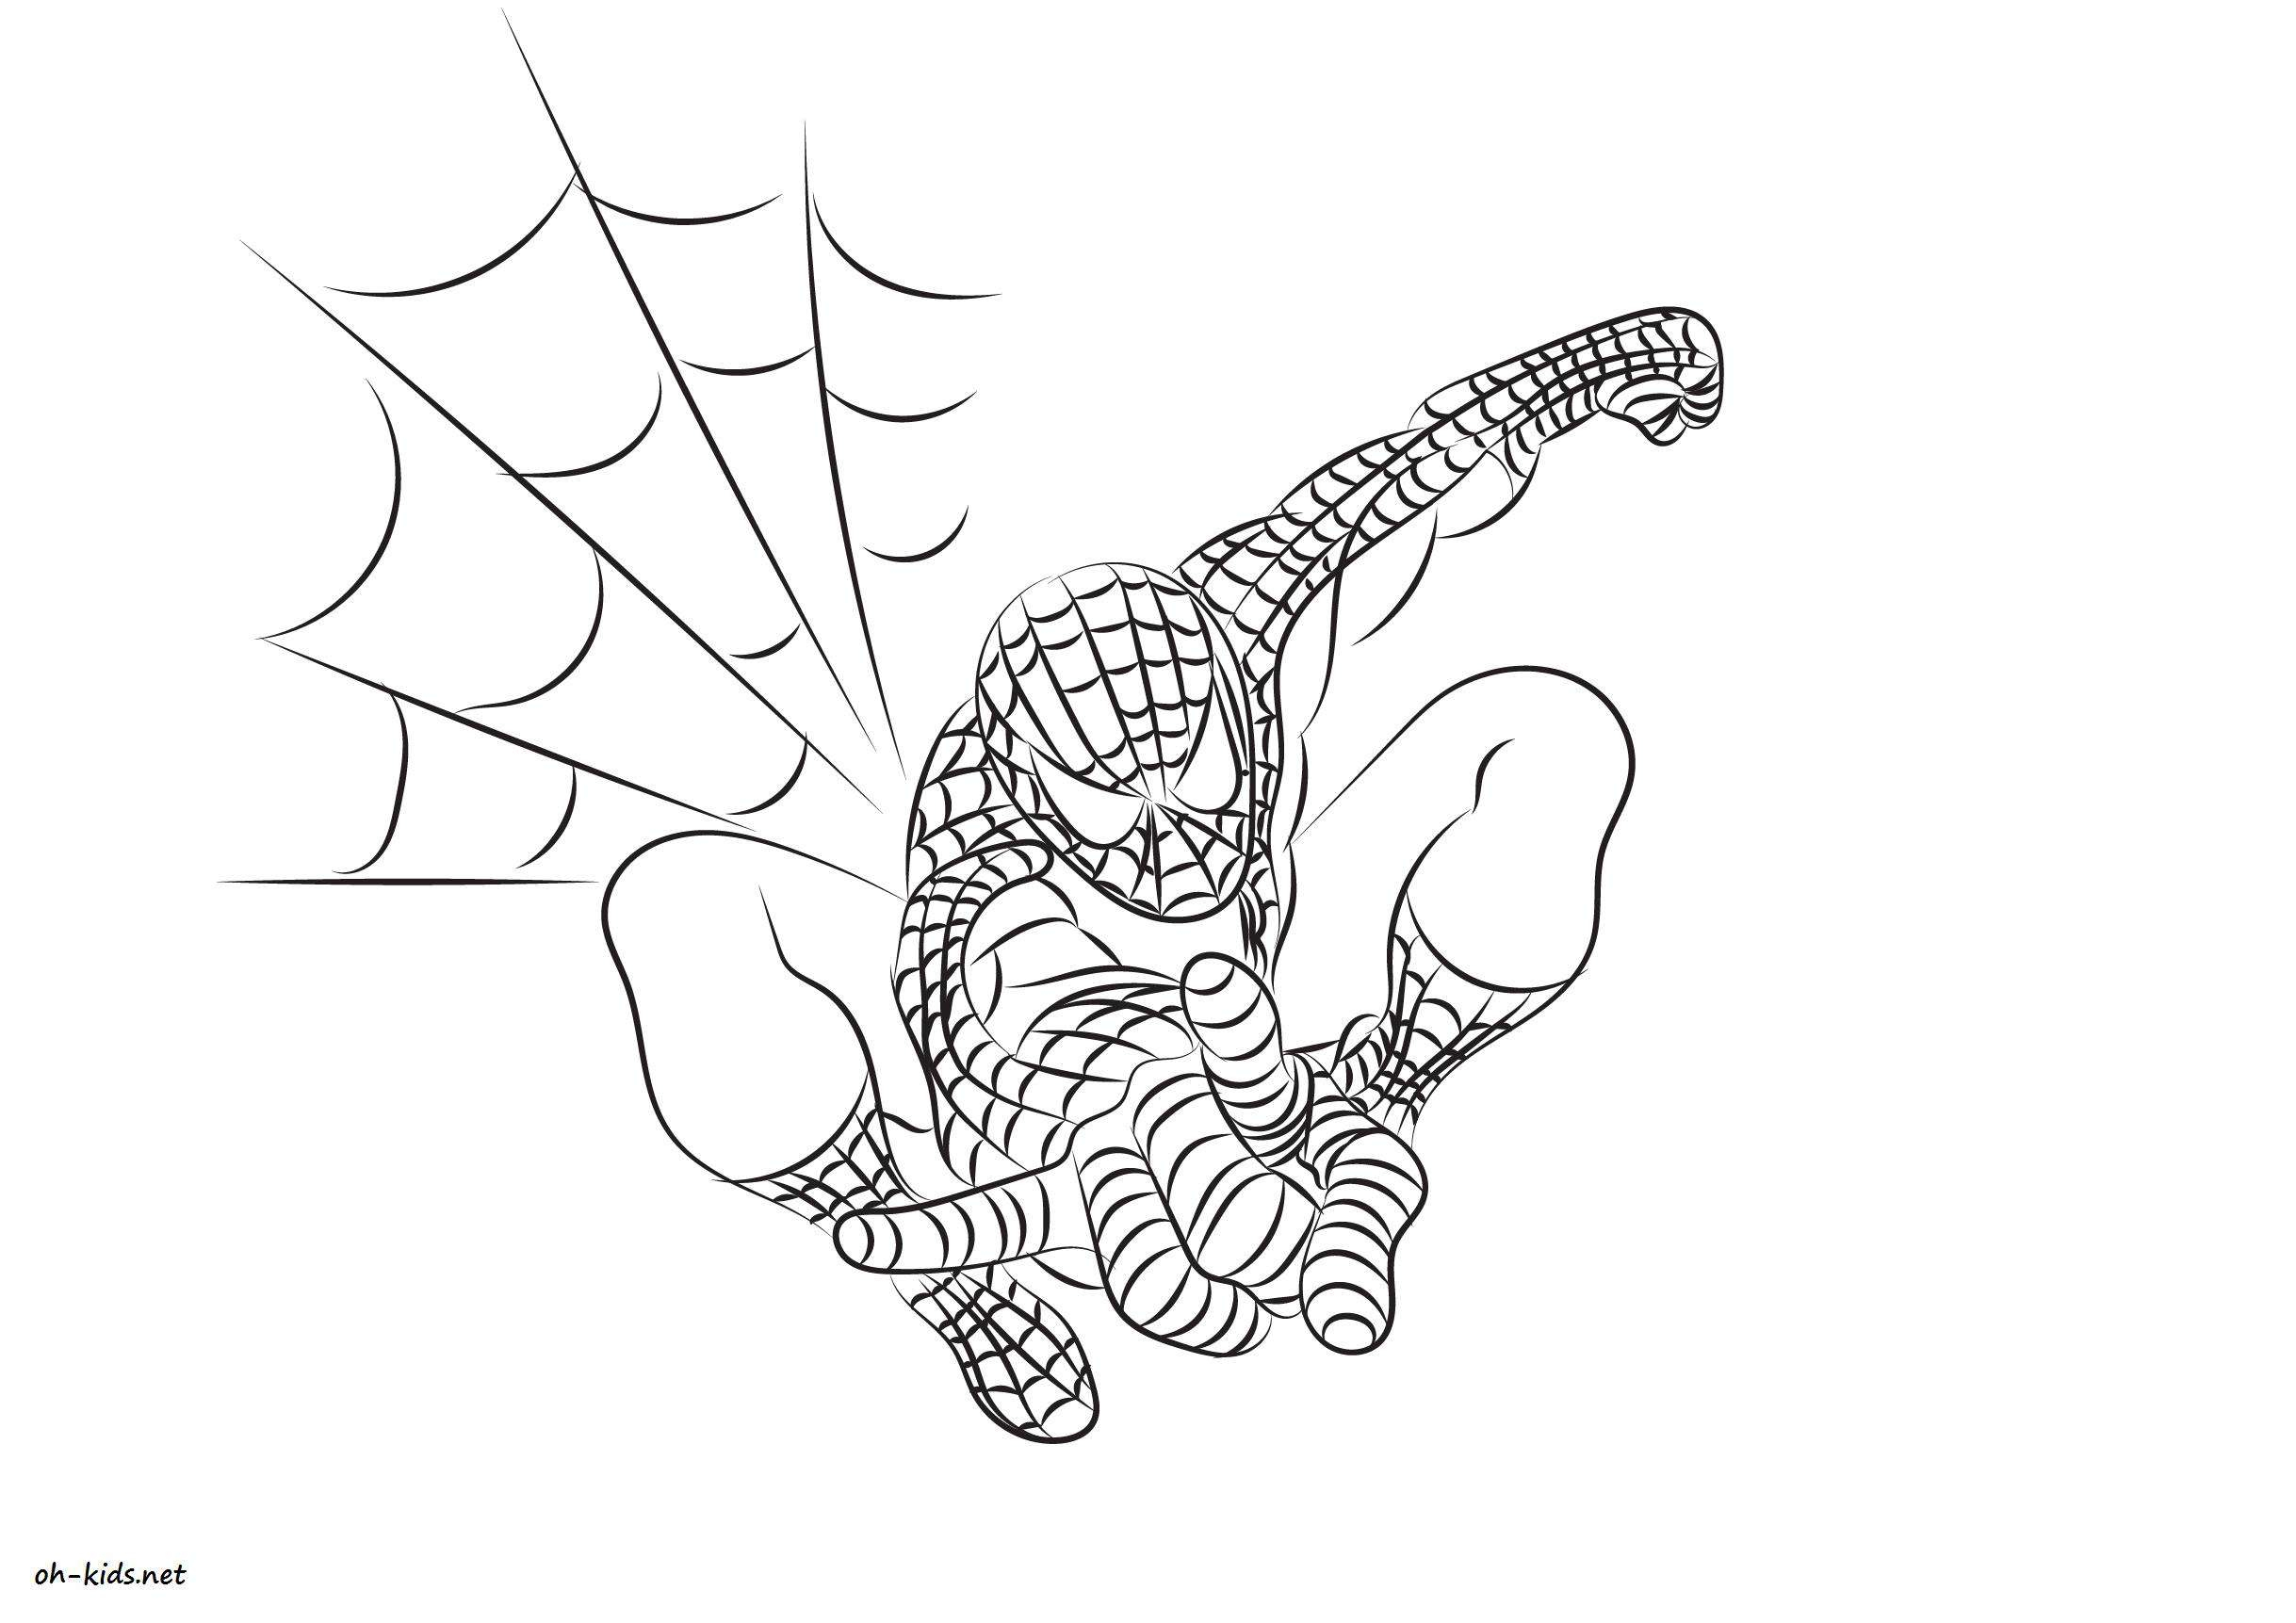 Coloriage Spiderman - Oh Kids Fr à Dessin Spiderman À Imprimer Gratuit